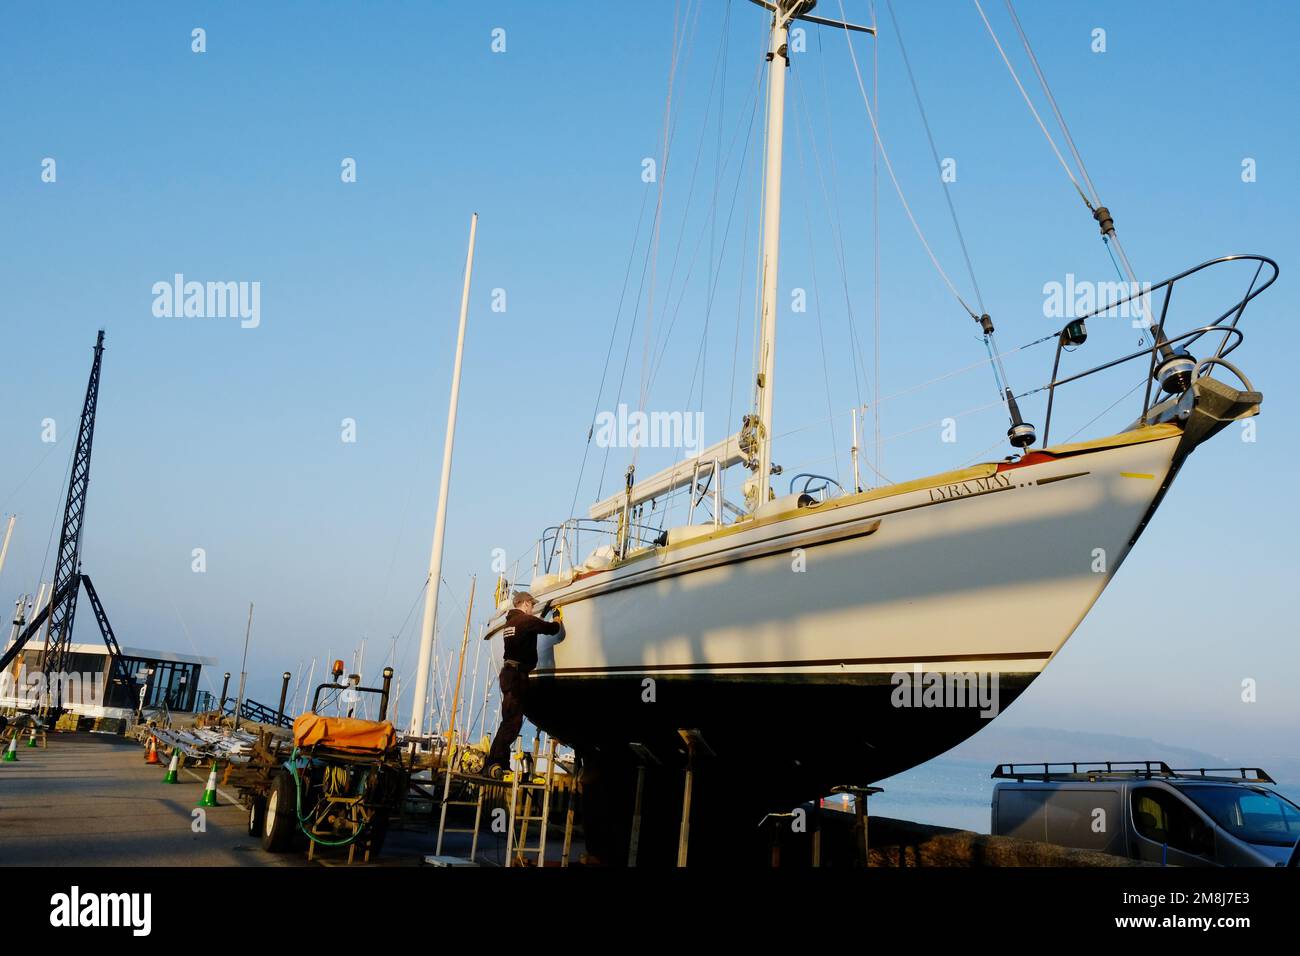 Gros yacht à voile en cours de réparation à Mylor Yacht Harbor, Cornwall, Royaume-Uni - John Gollop Banque D'Images